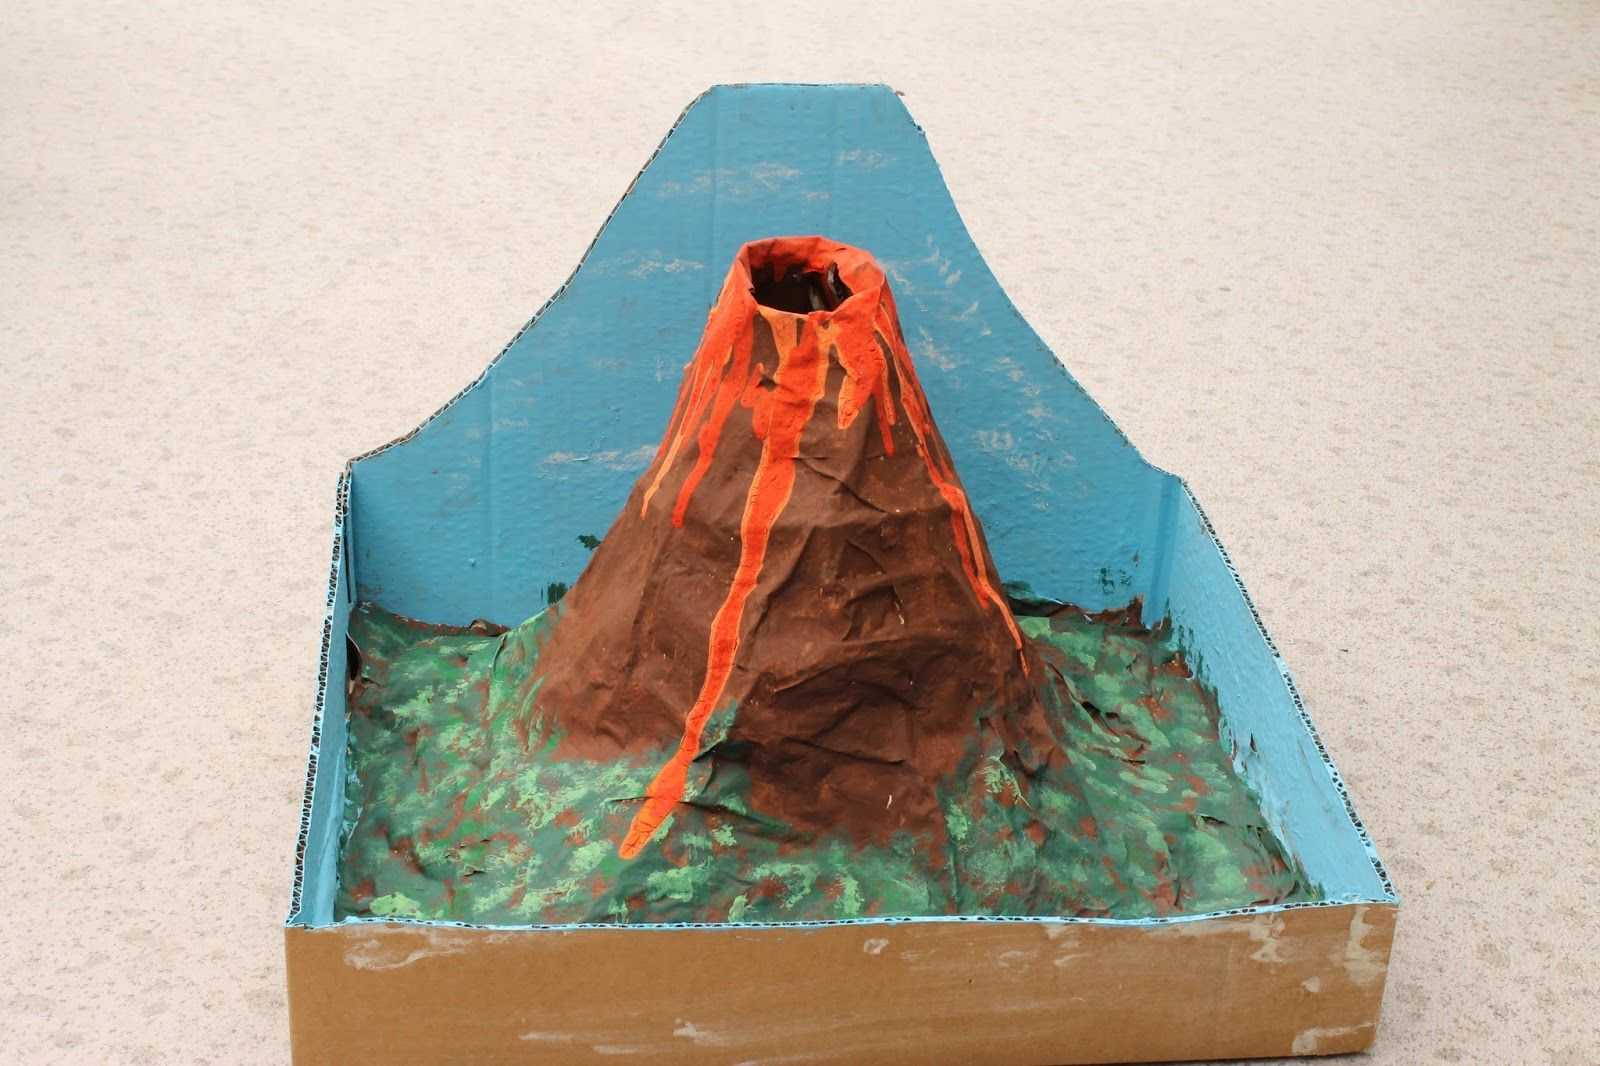 Создание макета вулкана из бумаги своими руками